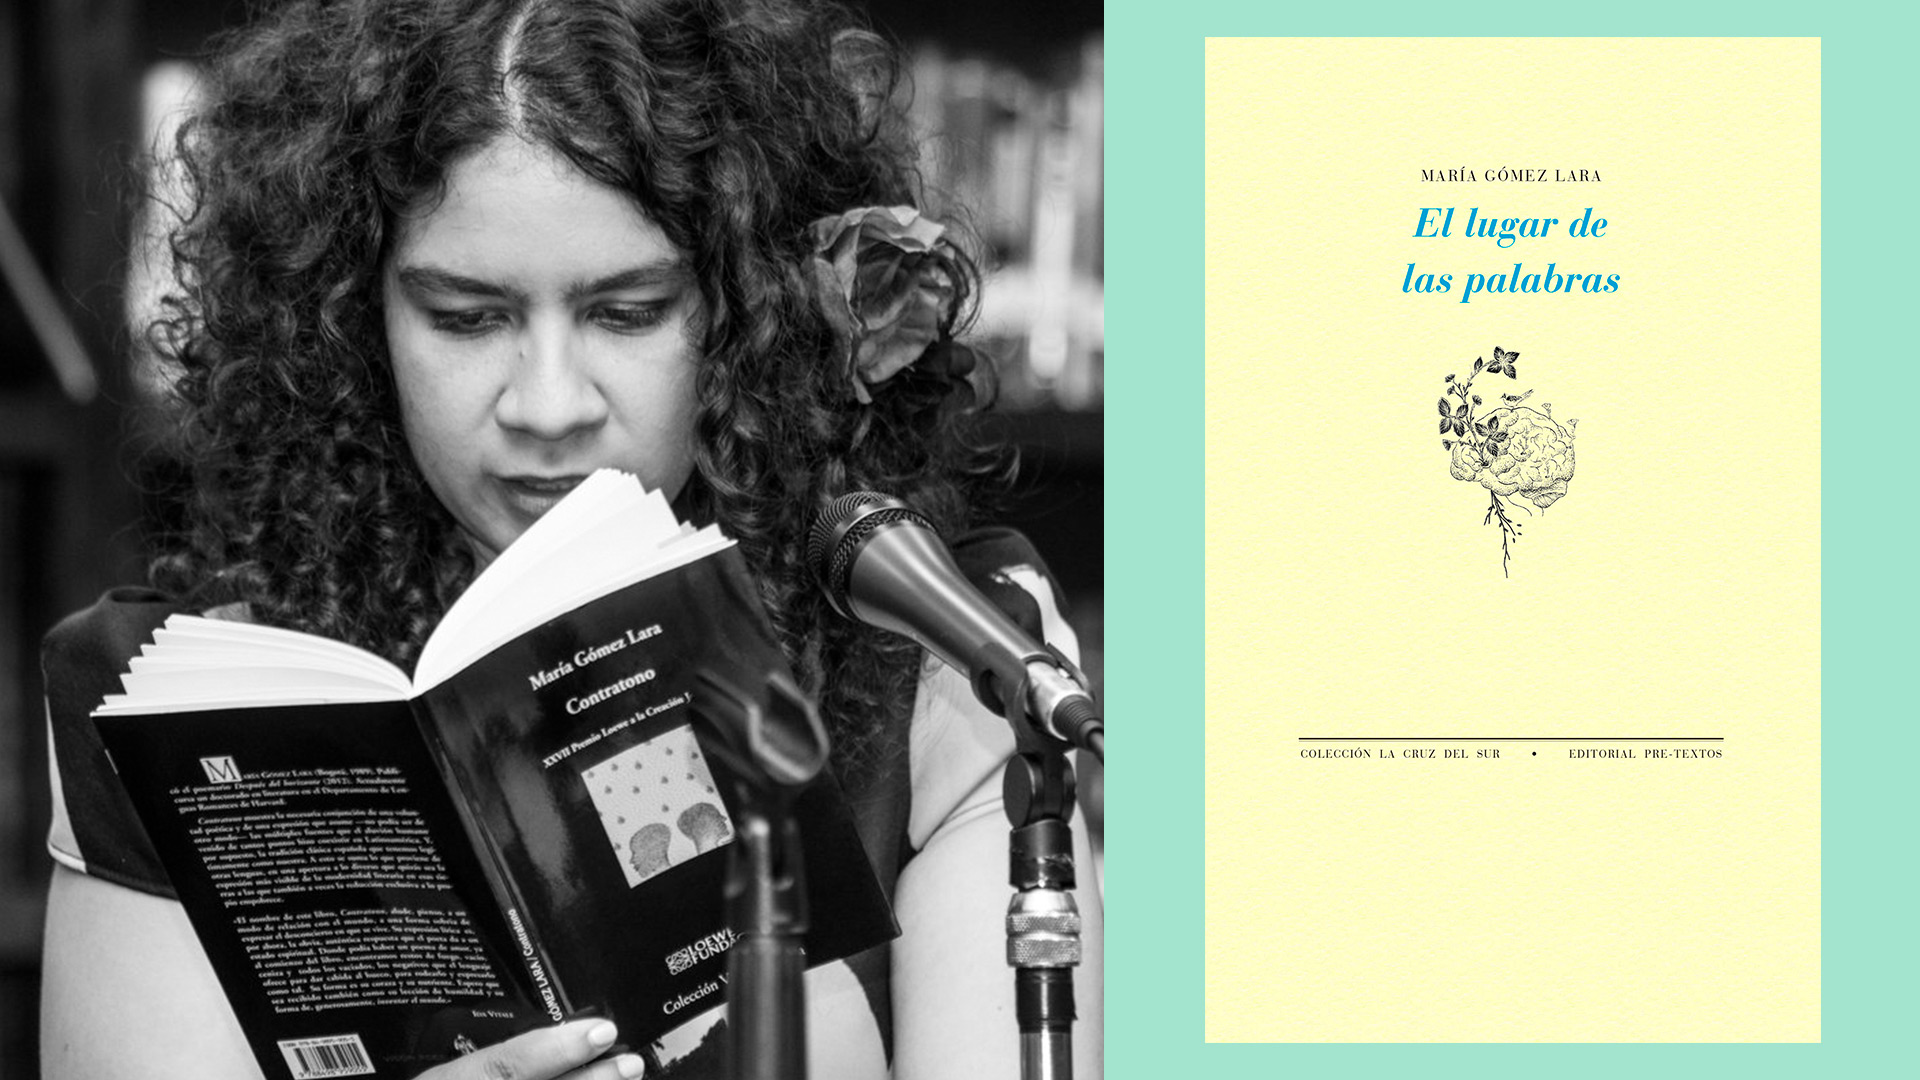 Este poemario es el tercer libro de María Gómez Lara